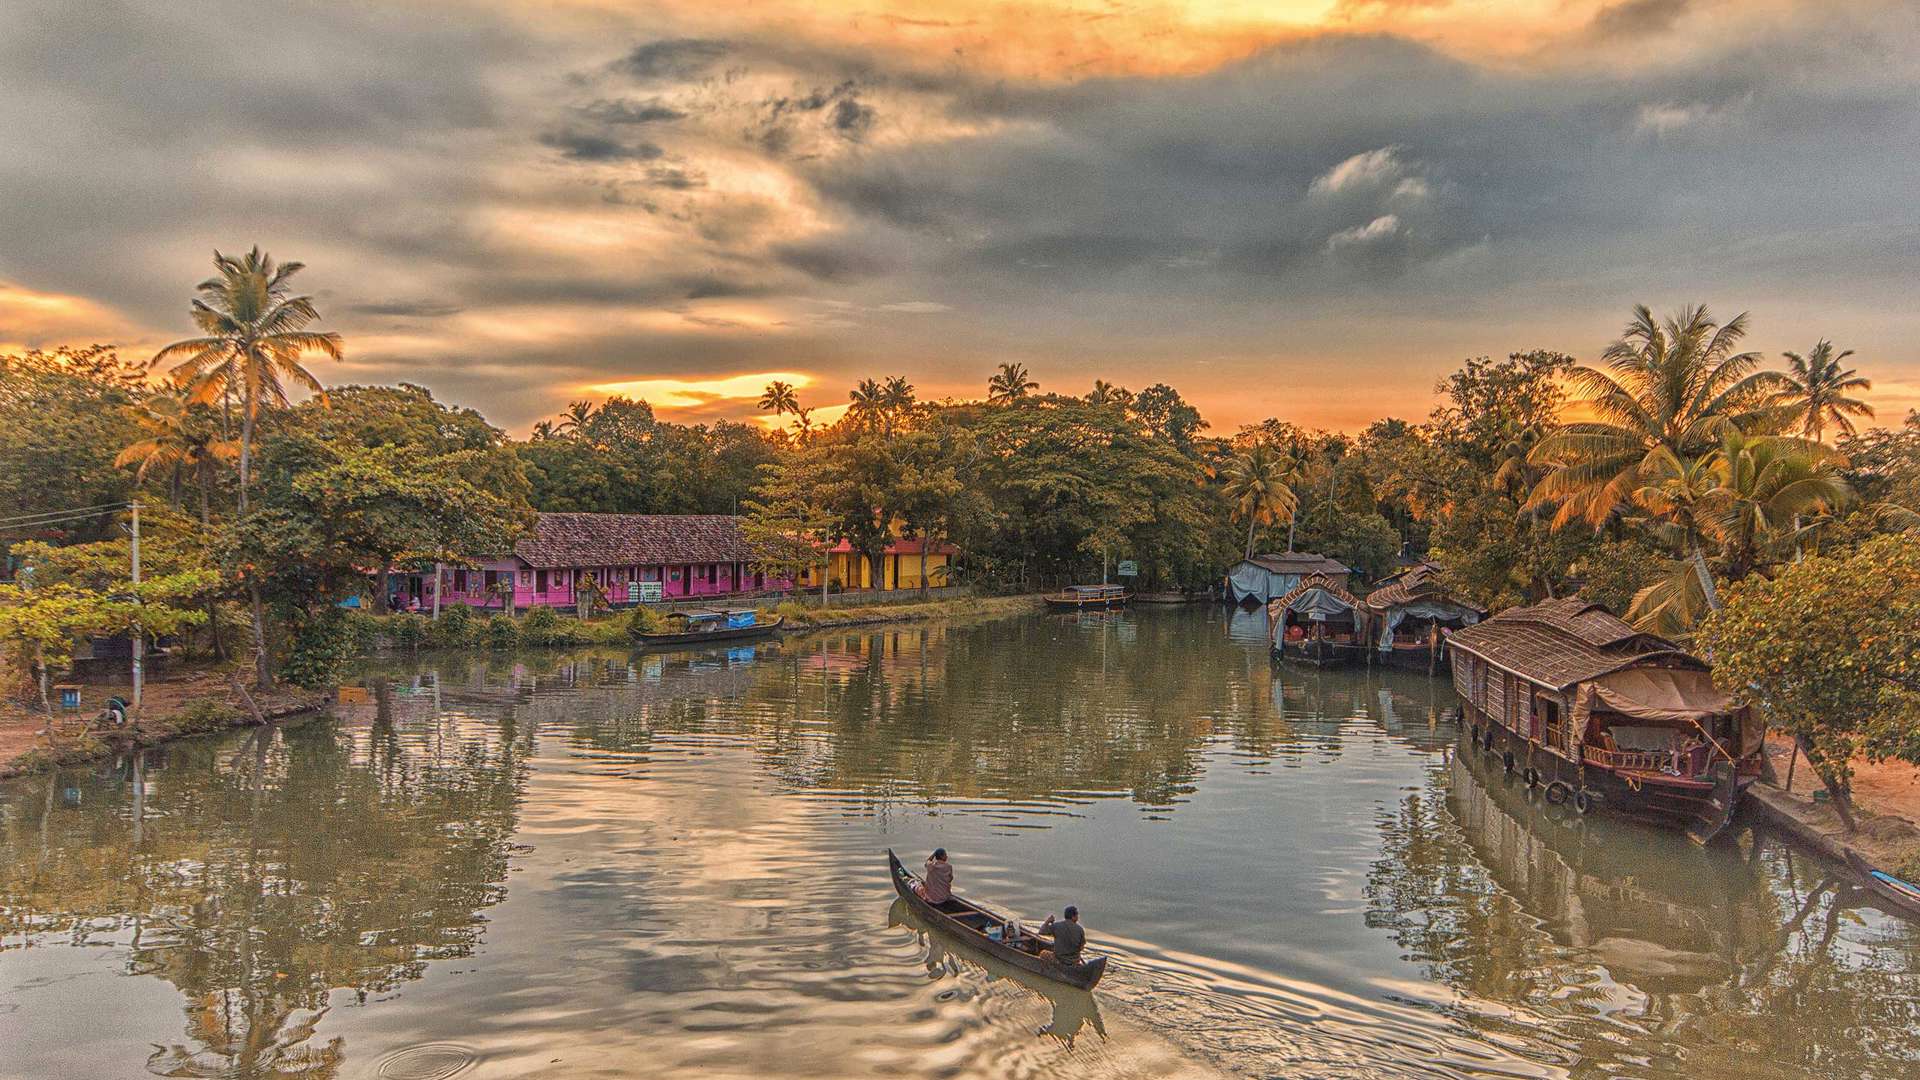 Keralan Backwaters, Southern India